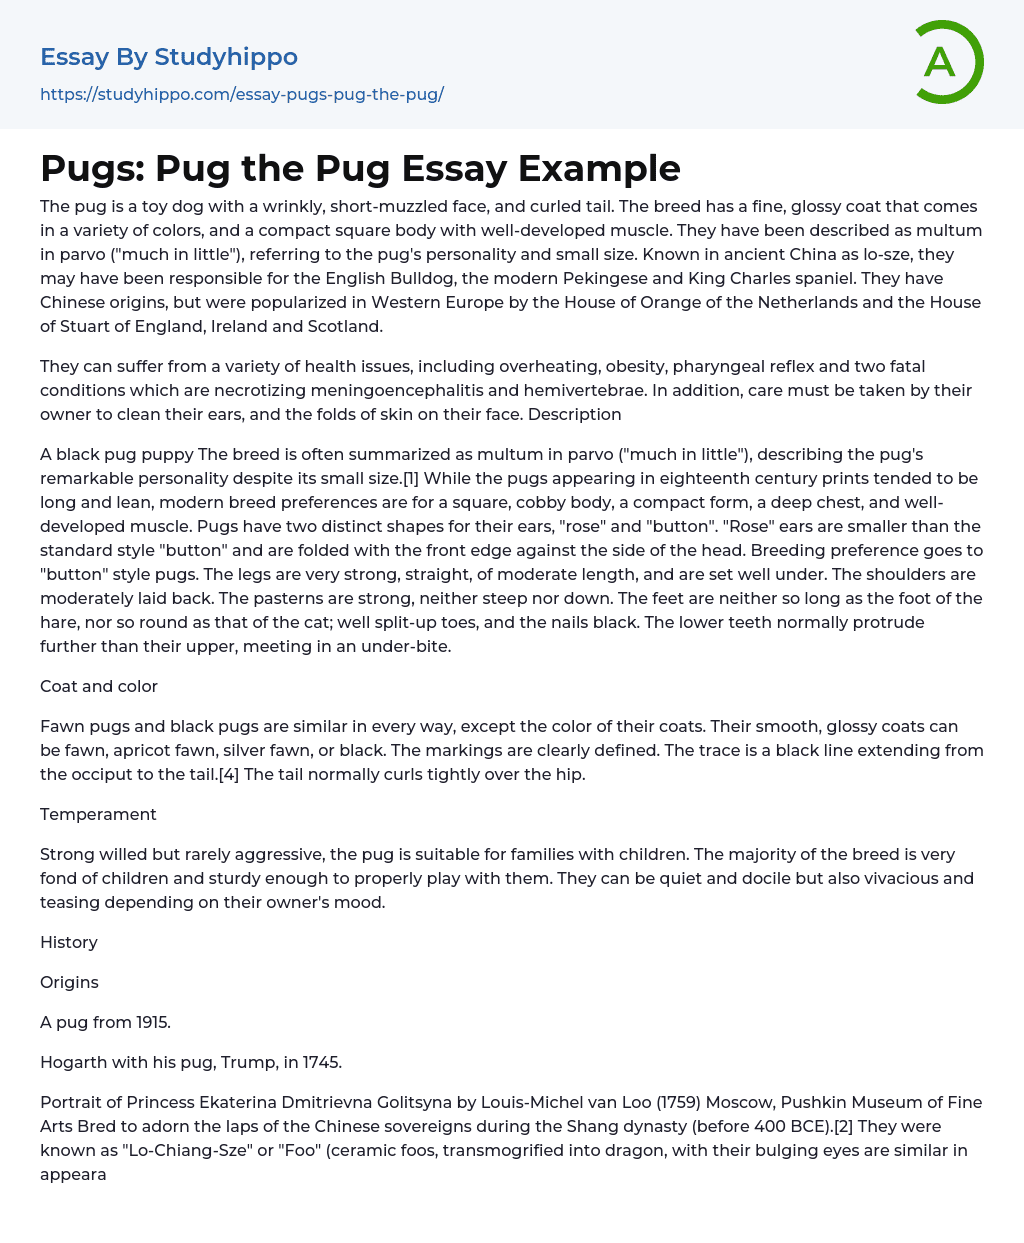 Pugs: Pug the Pug Essay Example